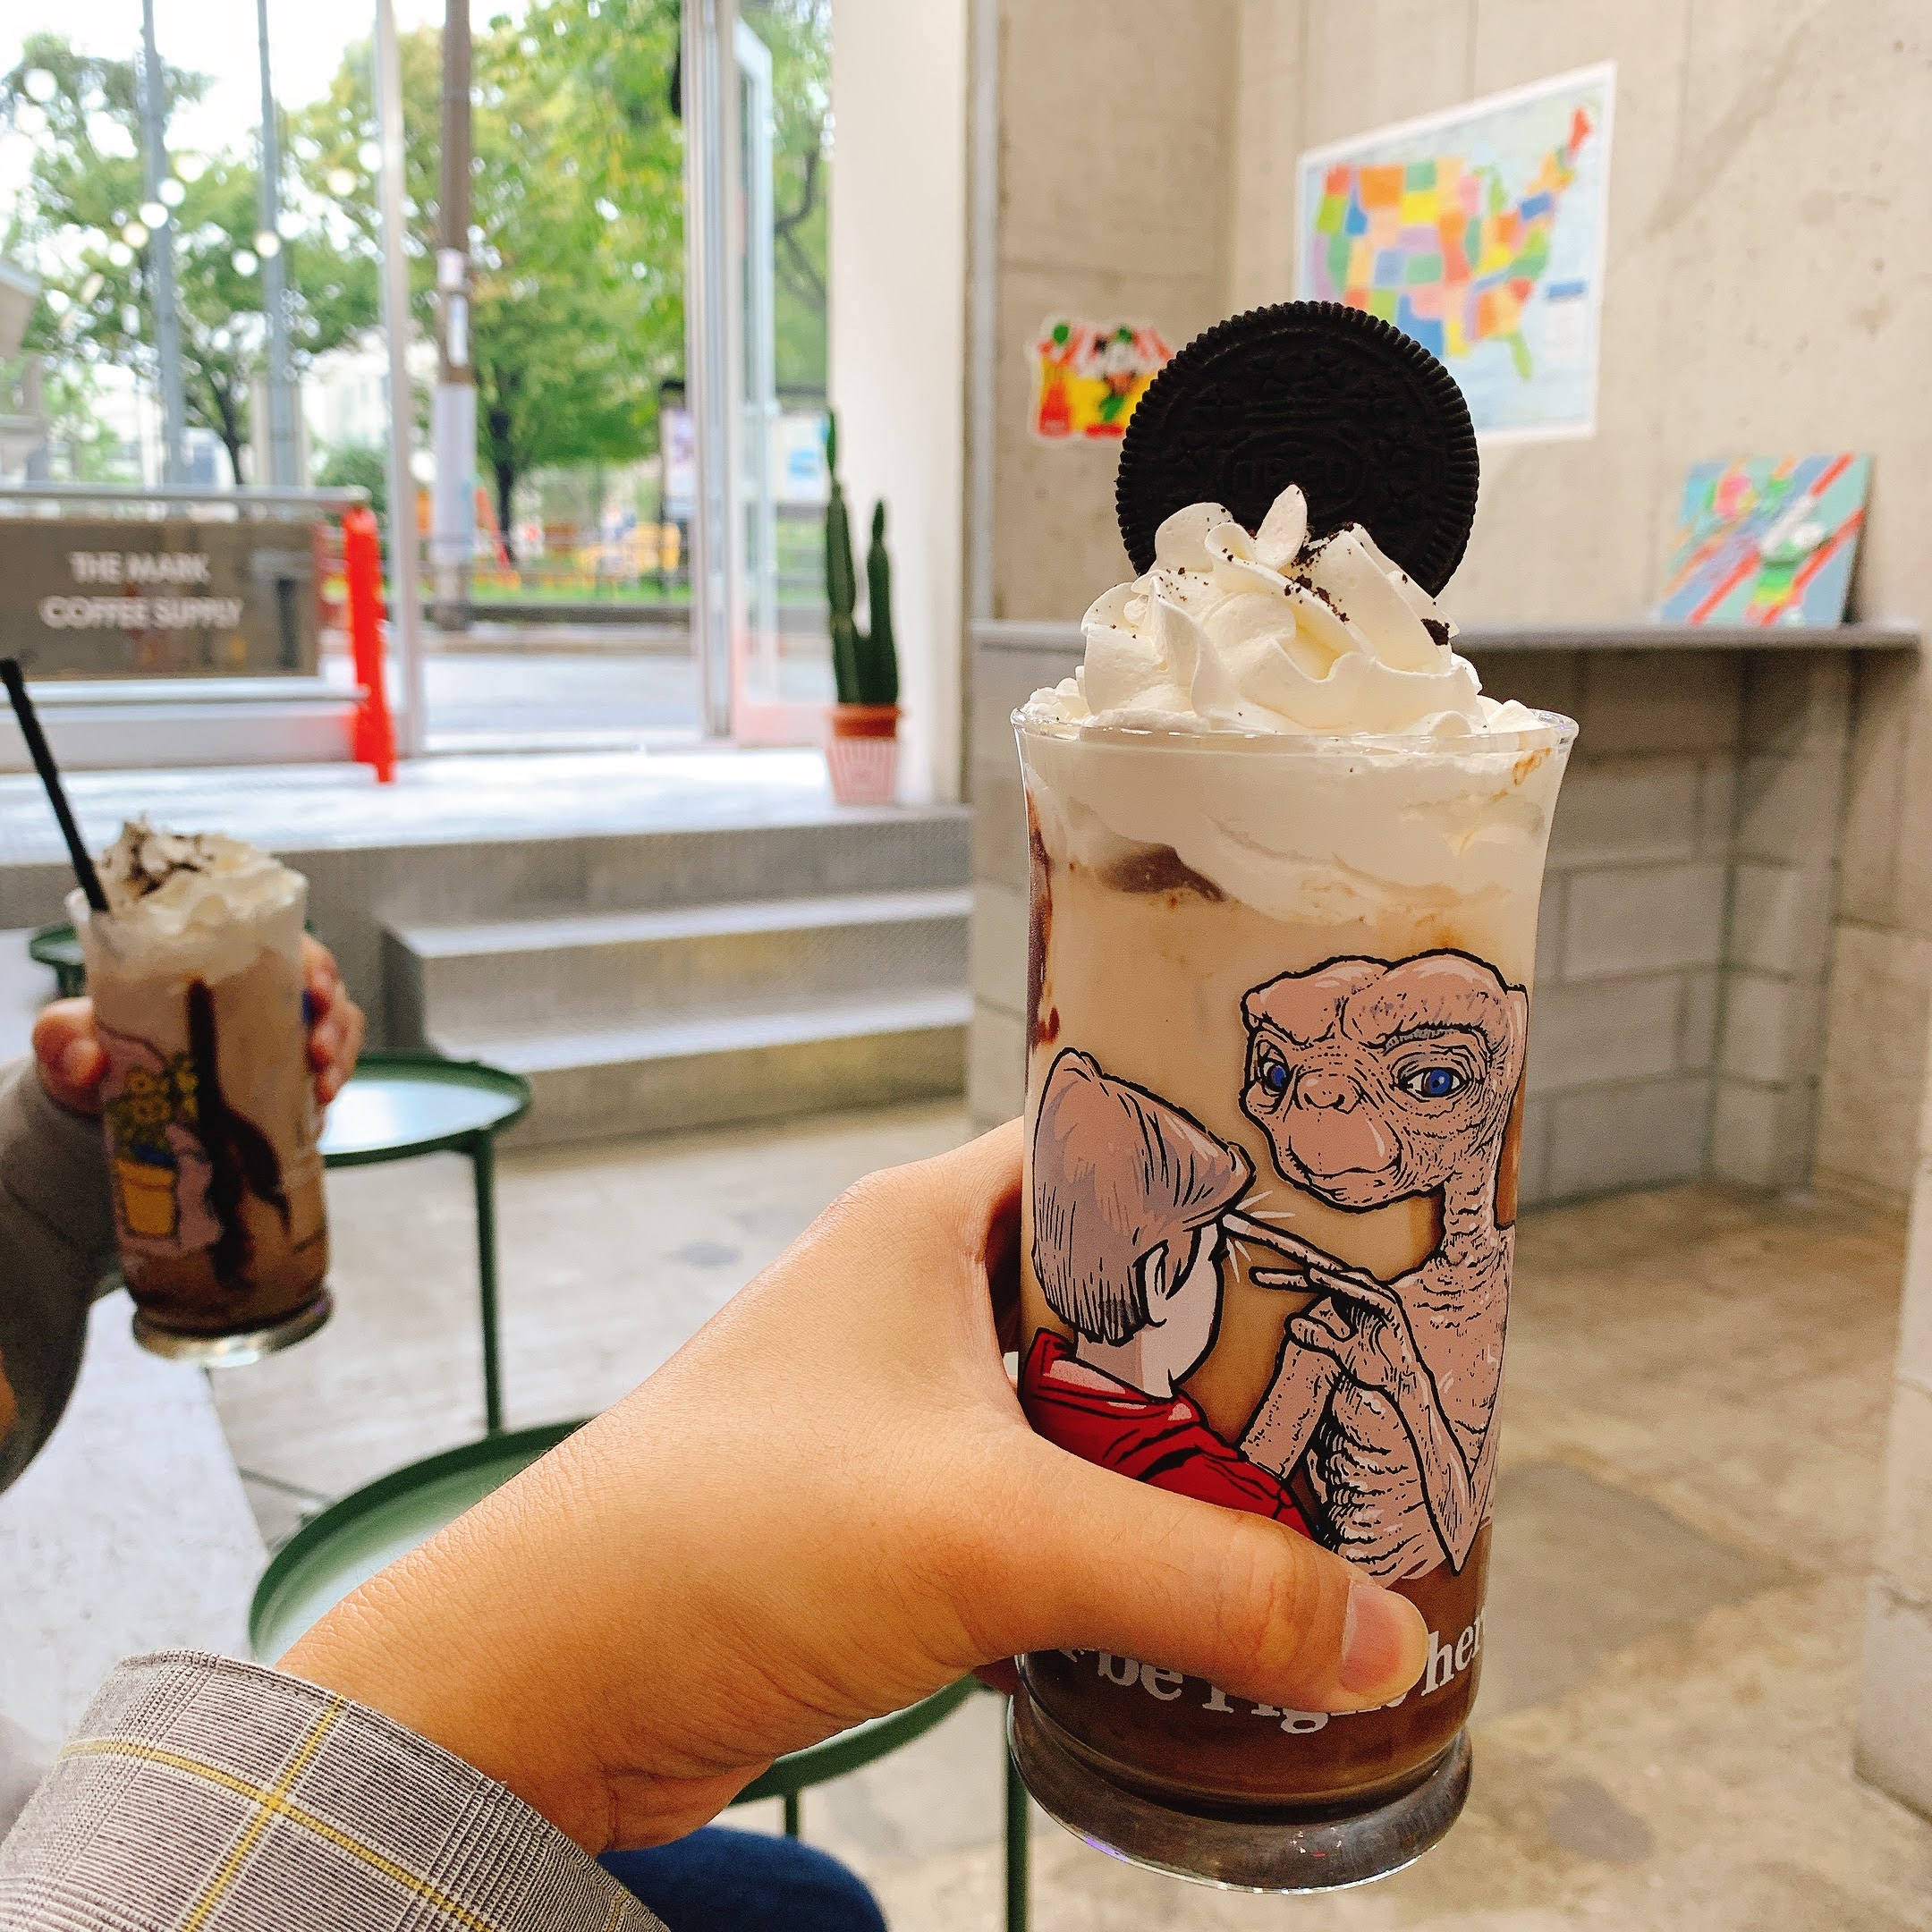 The Mark Coffee Supply 大阪 堀江 インスタ女子たちが大好きそうなカフェ発見 管理栄養士けいんのすけの関西ビタメシscrap